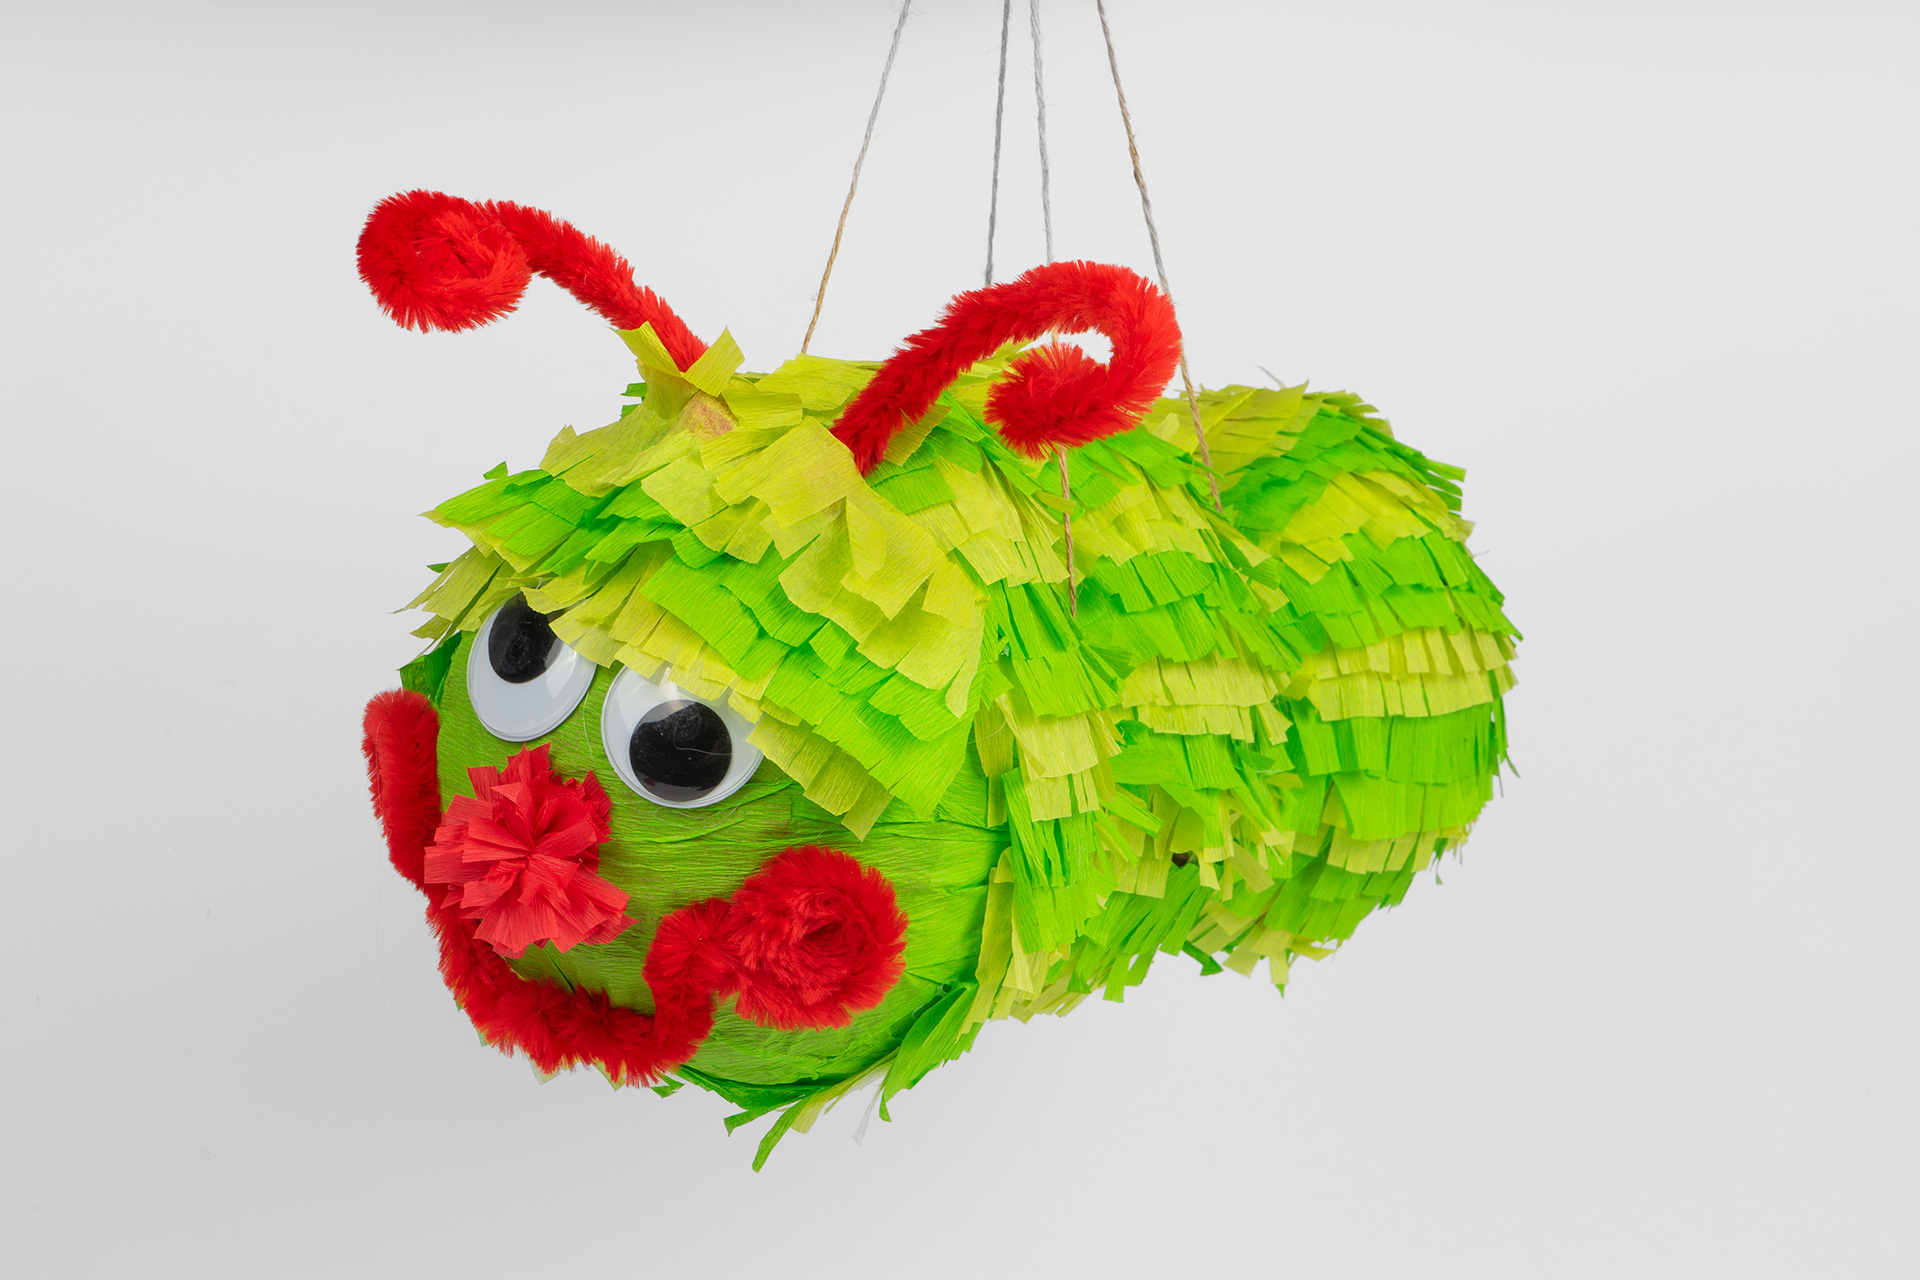 Luftballon-Piñata Fertig!